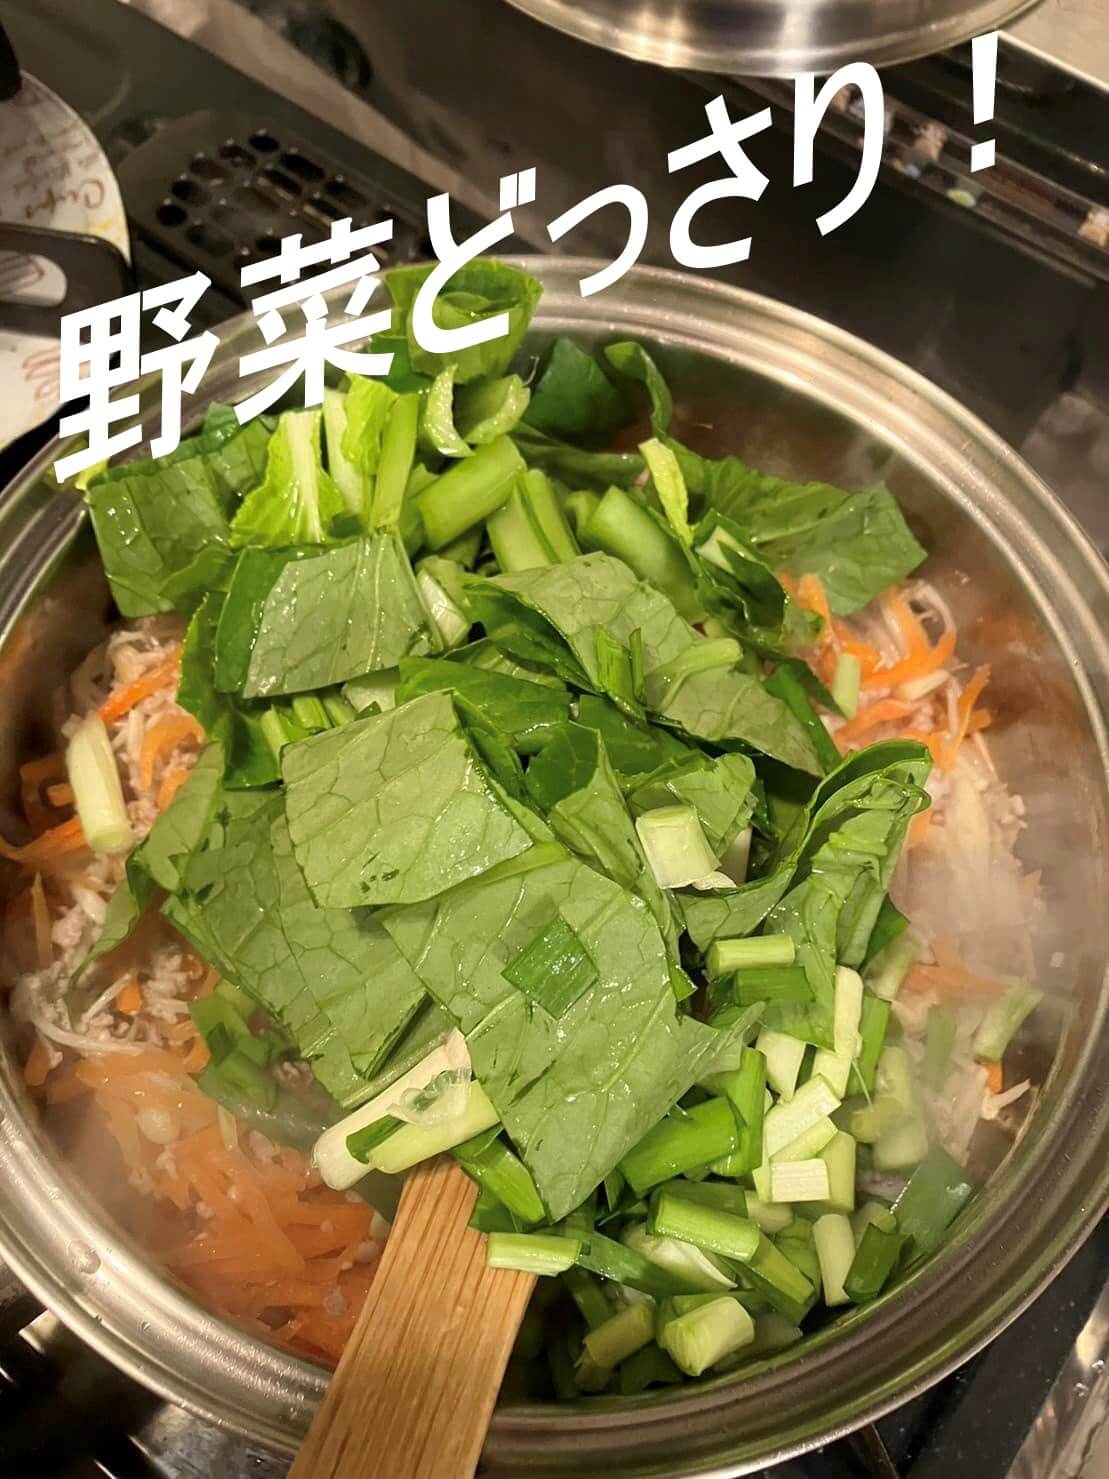 オイシックスのおためしセットのそぼろと野菜のビビンバ・小ねぎとのり、豆腐の韓国風スープのミールキットの中味を撮影した写真